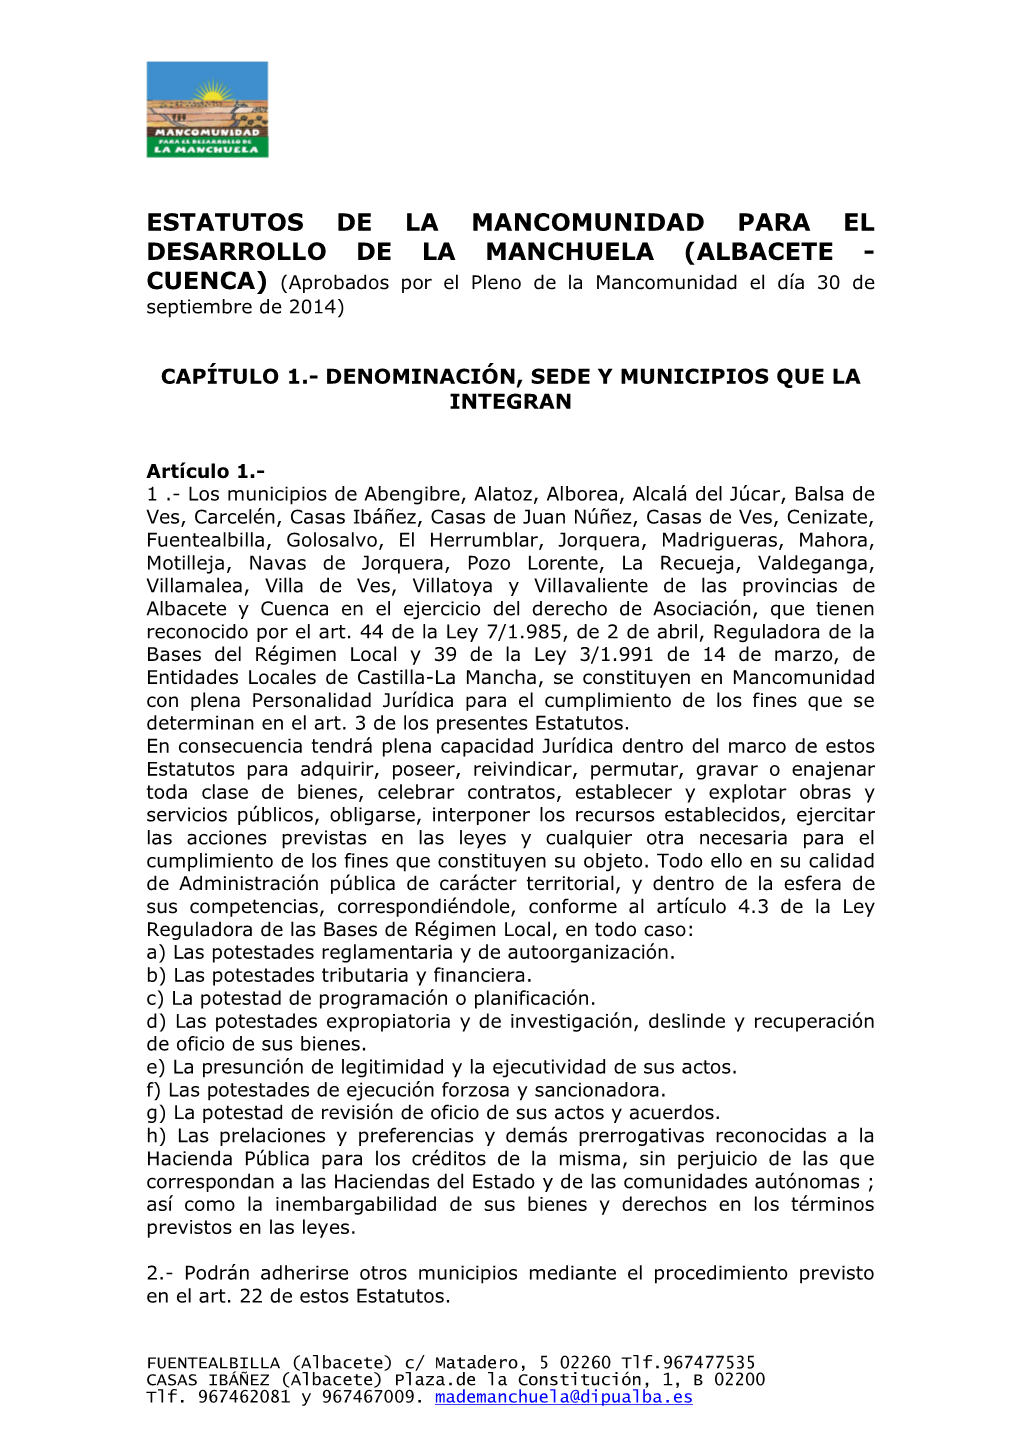 ESTATUTOS DE LA MANCOMUNIDAD PARA EL DESARROLLO DE LA MANCHUELA (ALBACETE - CUENCA) (Aprobados Por El Pleno De La Mancomunidad El Día 30 De Septiembre De 2014)